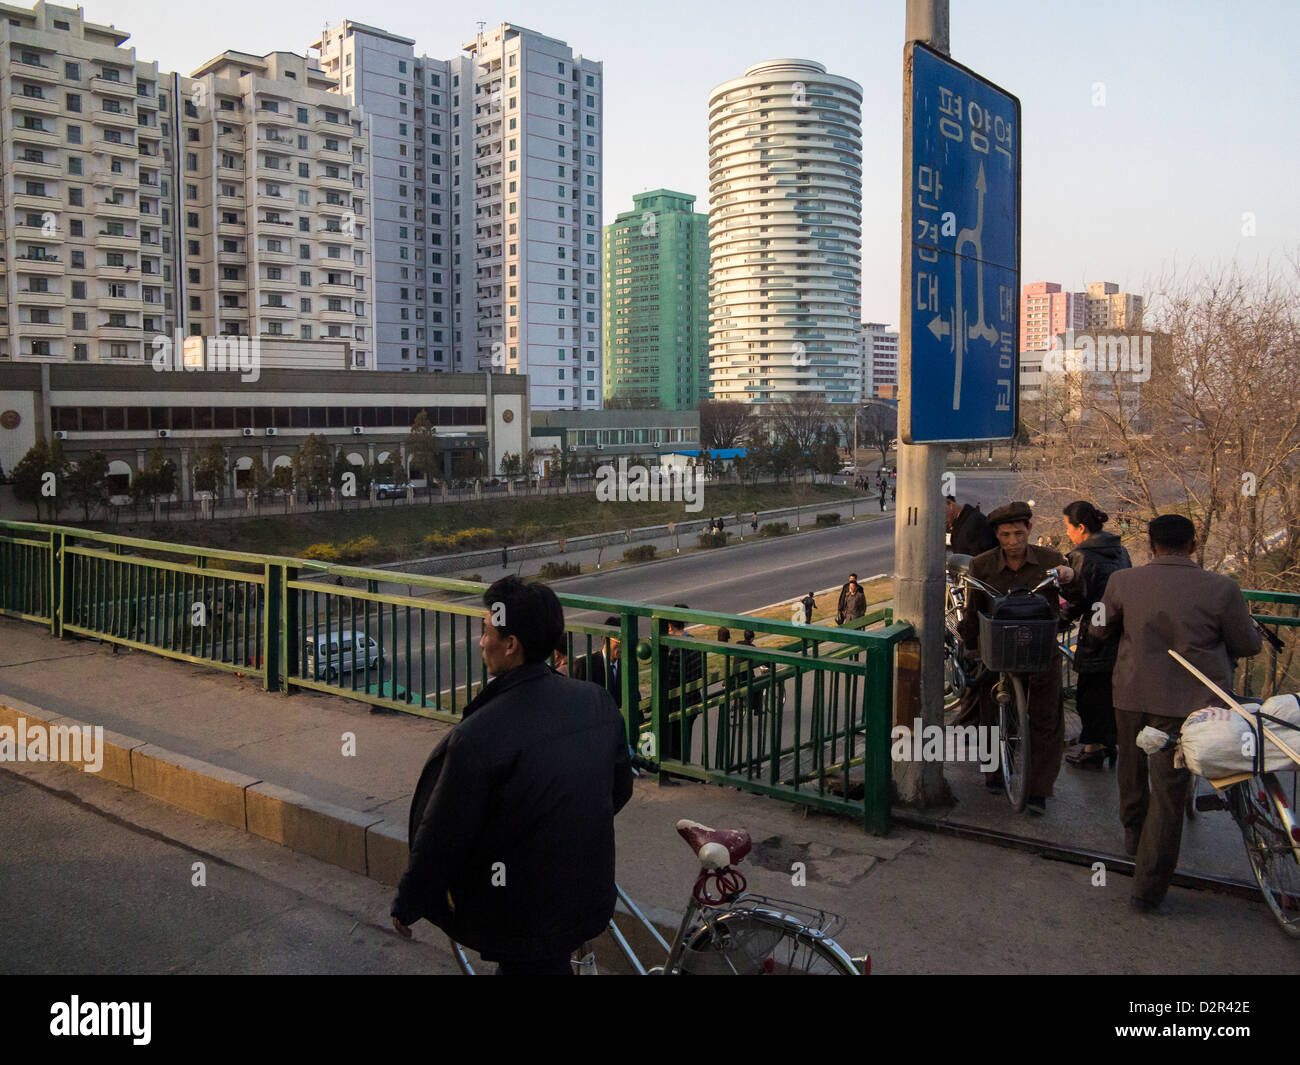 Tipica scena di strada nella capitale Pyongyang, Repubblica Popolare Democratica di Corea (DPRK), la Corea del Nord, Asia Foto Stock